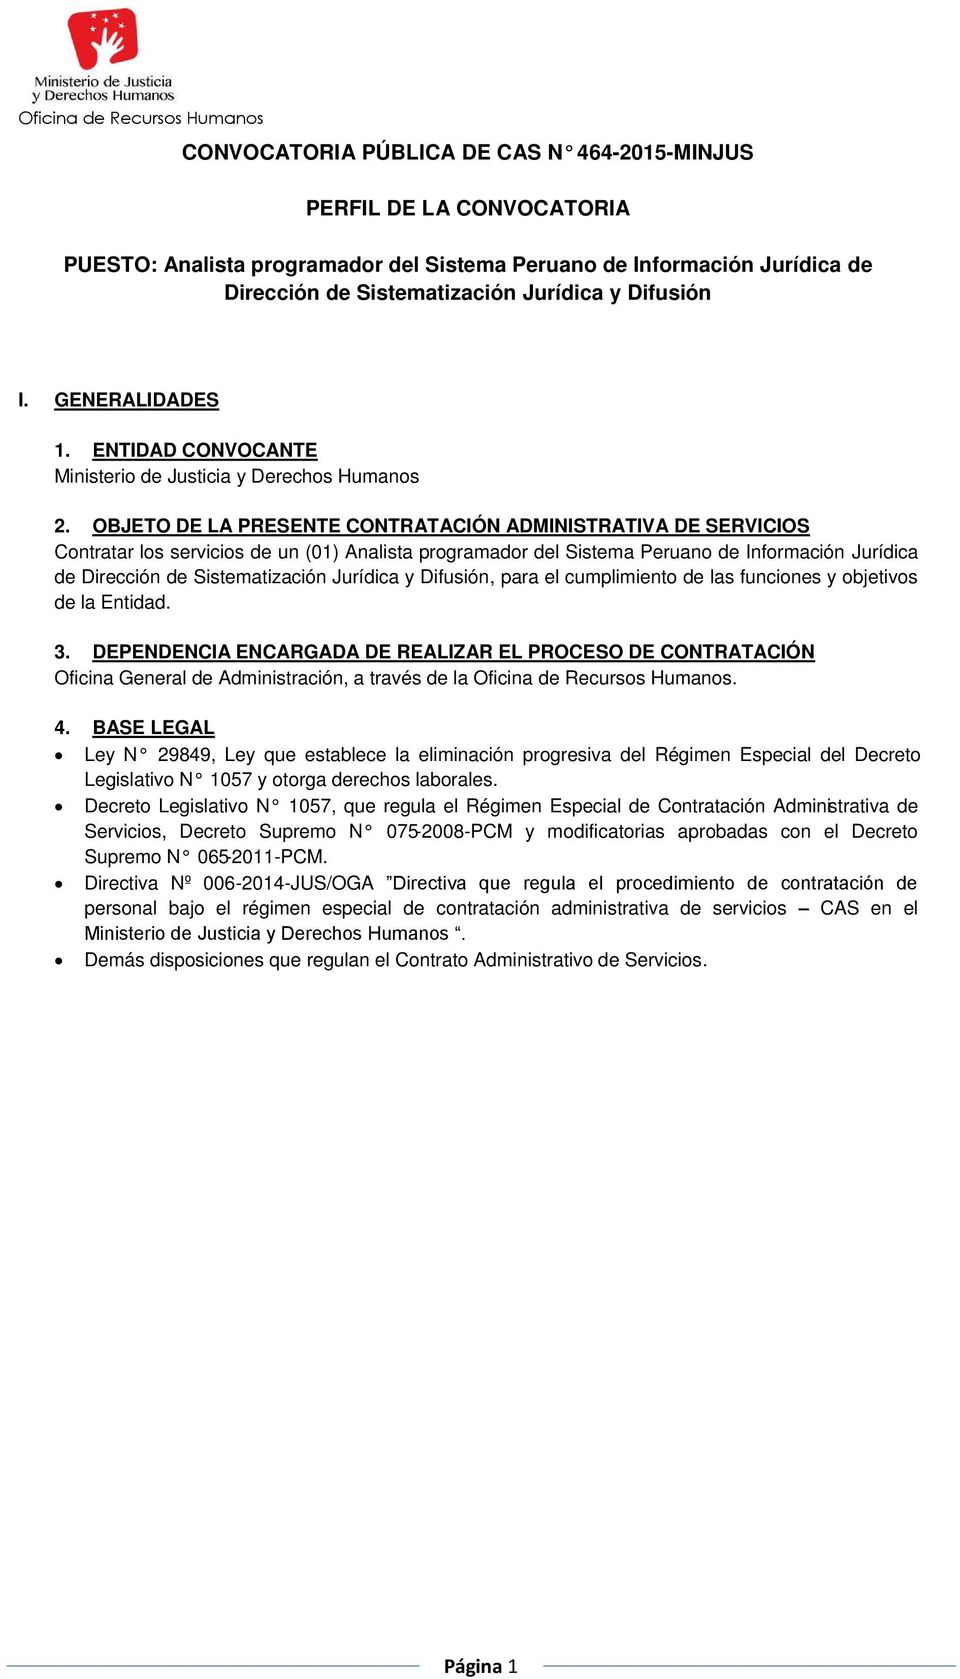 OBJETO DE LA PRESENTE CONTRATACIÓN ADMINISTRATIVA DE SERVICIOS Contratar los servicios de un (01) Analista programador del Sistema Peruano de Información Jurídica de Dirección de Sistematización